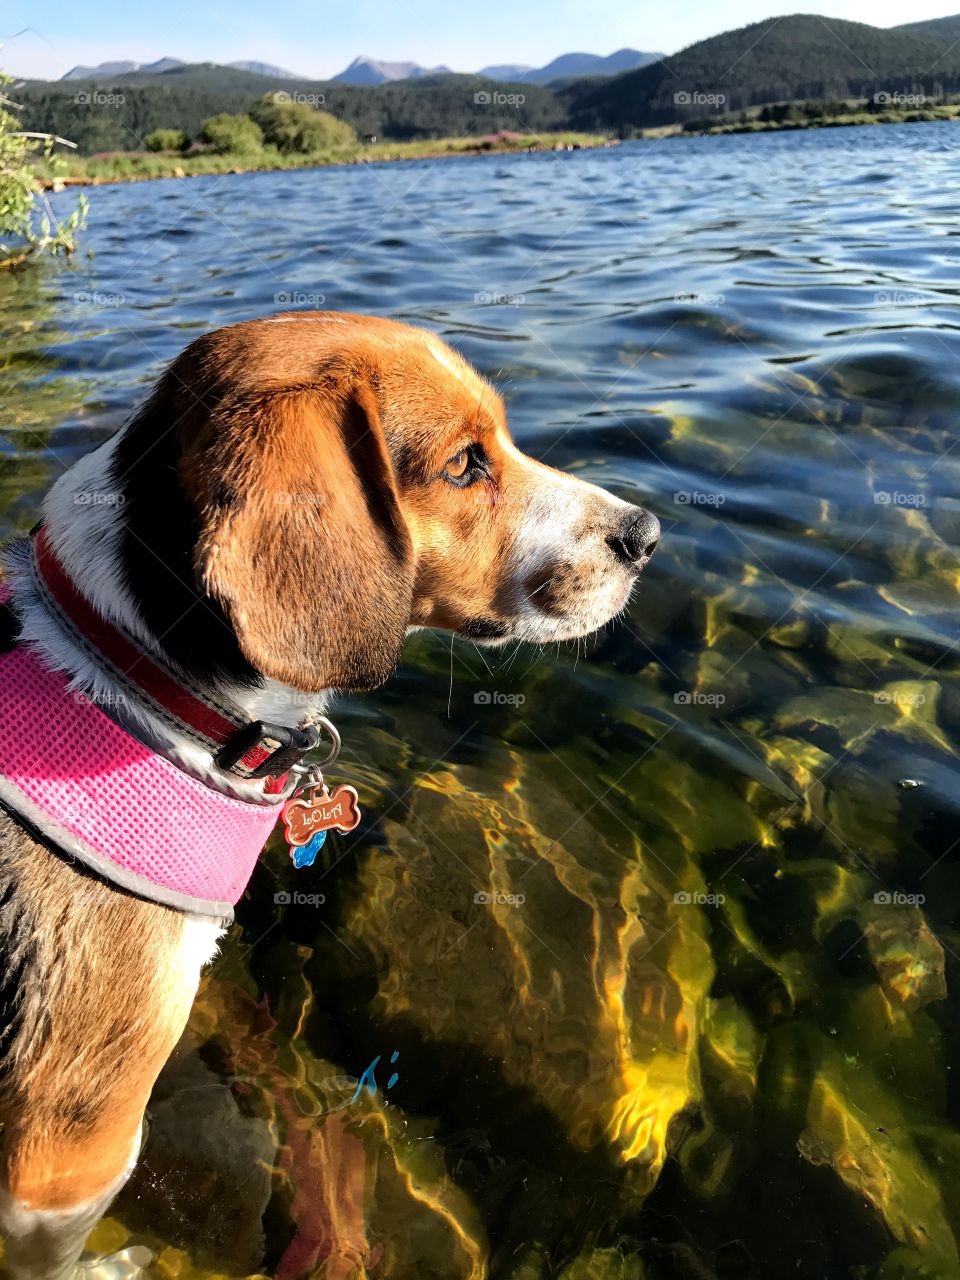 Lola at the lake 